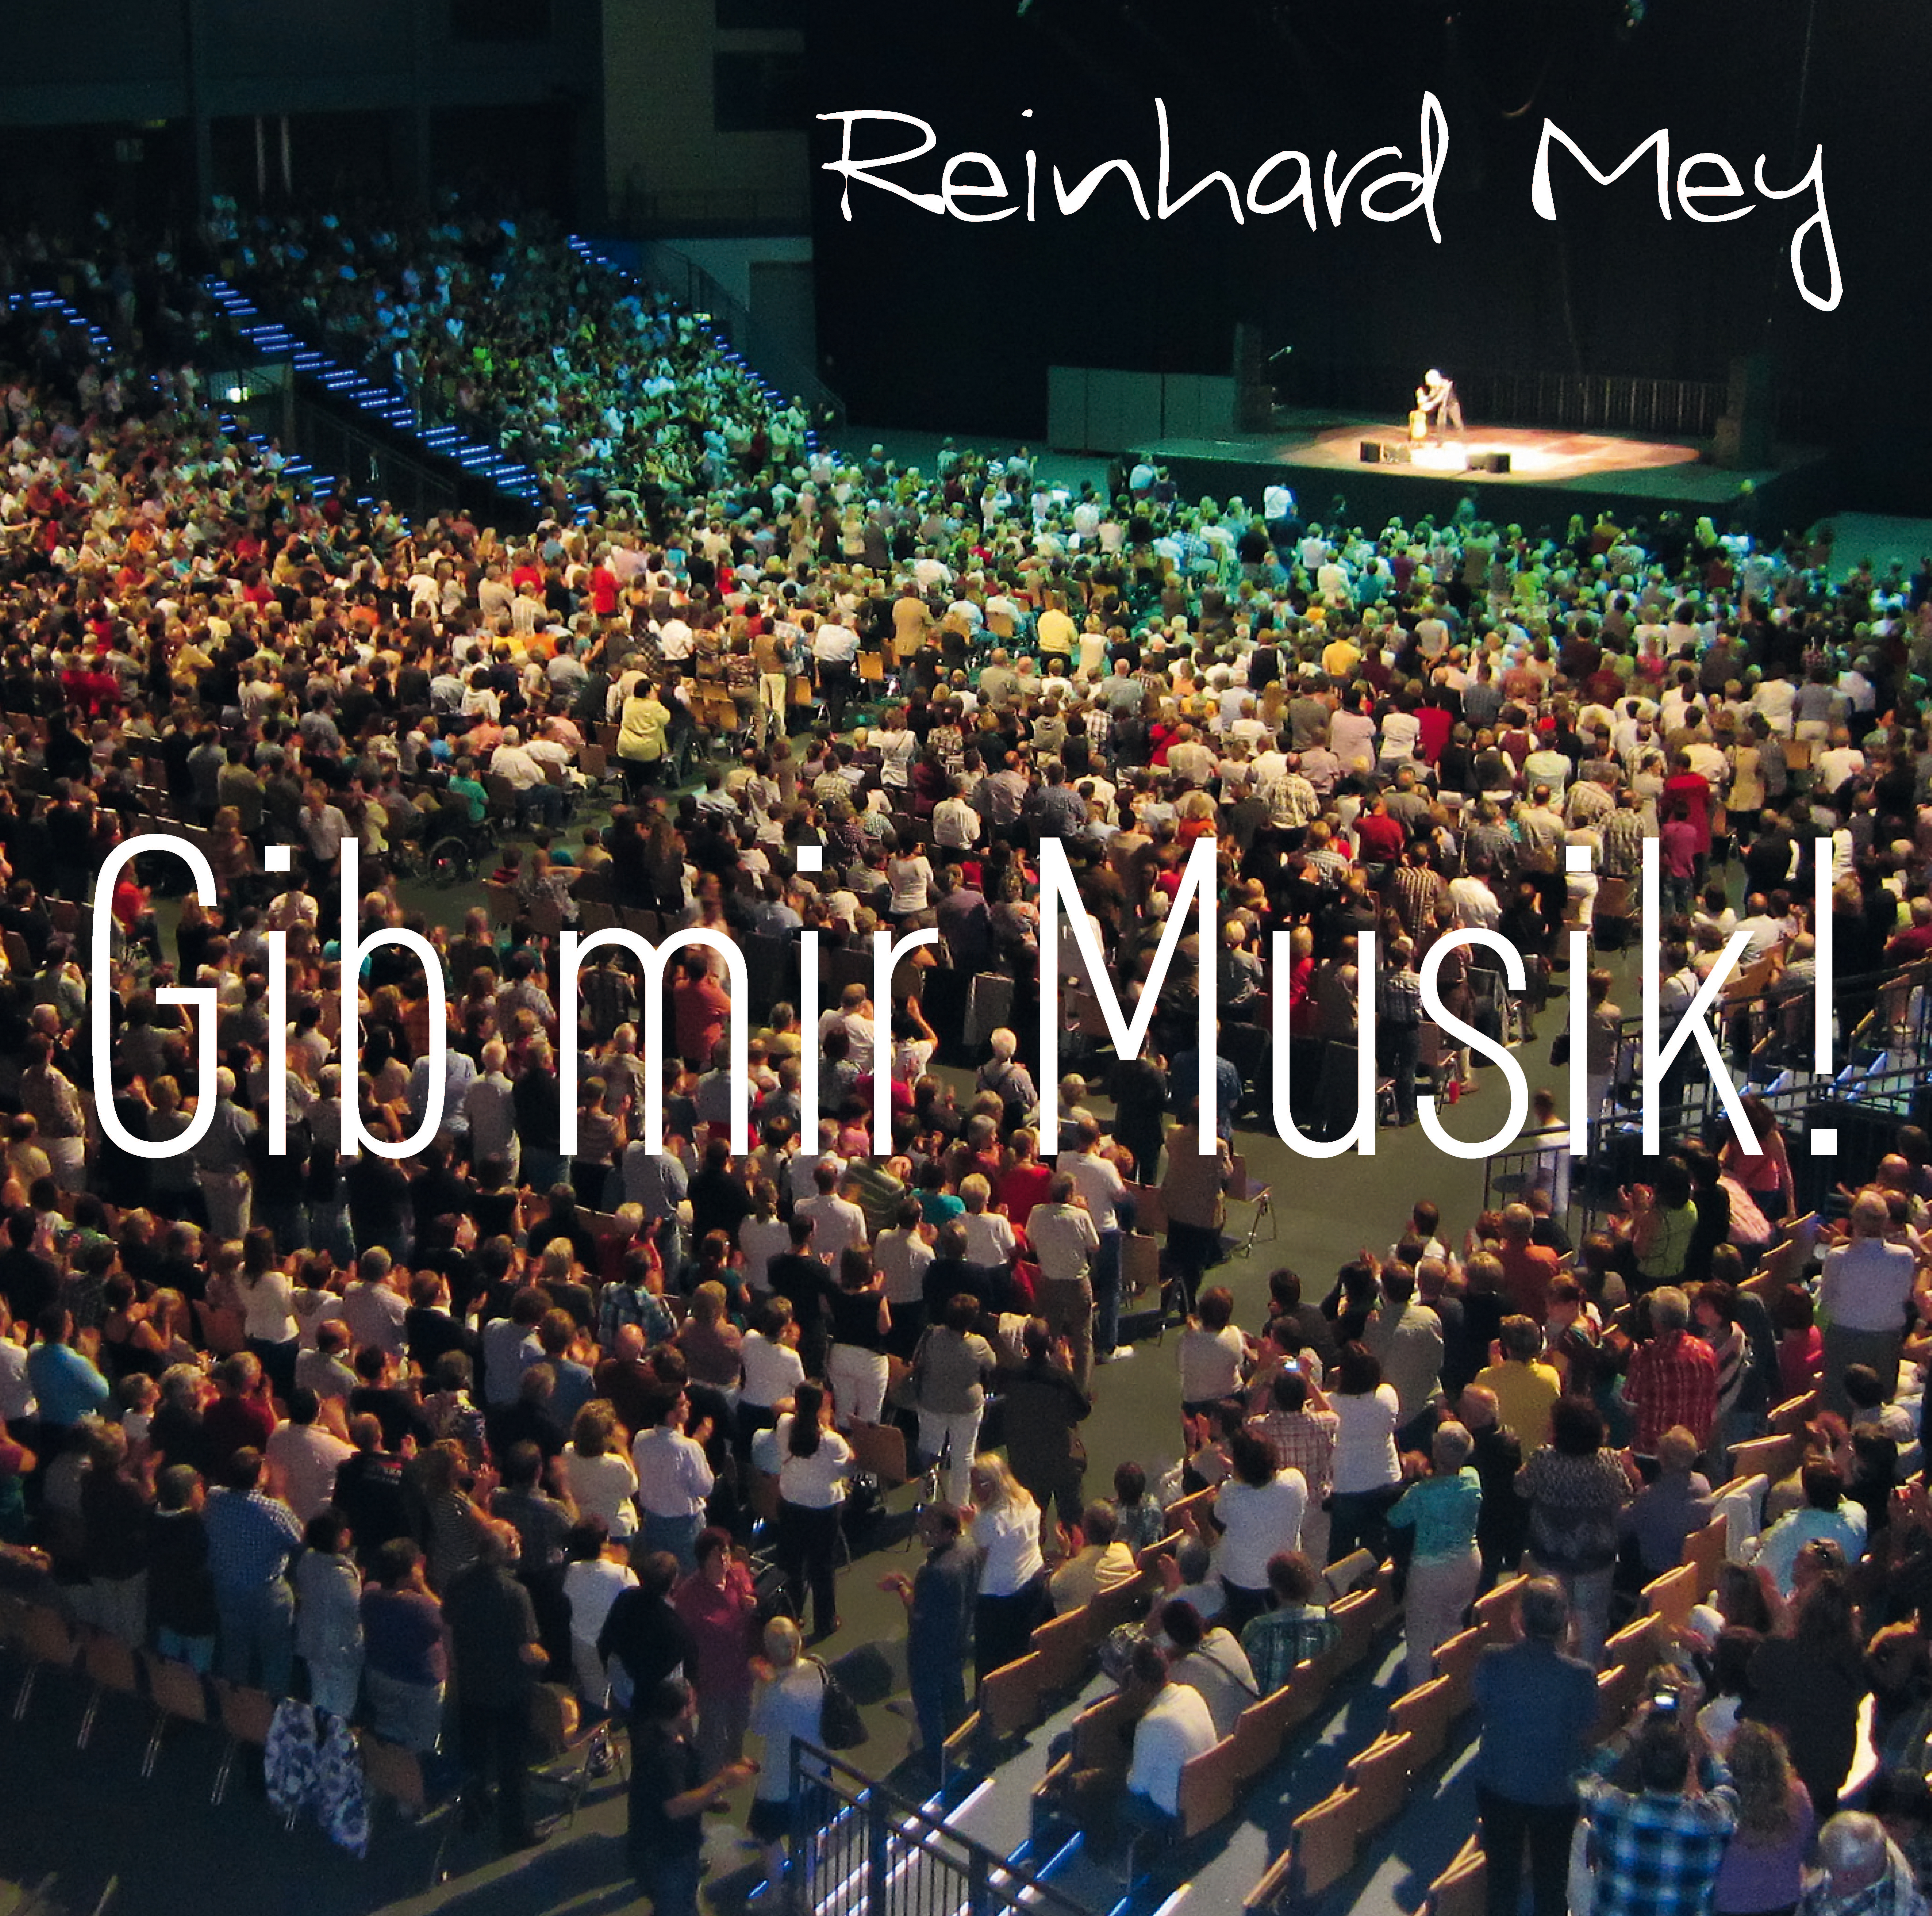 Musik Mir Gib - (CD) - Reinhard Mey